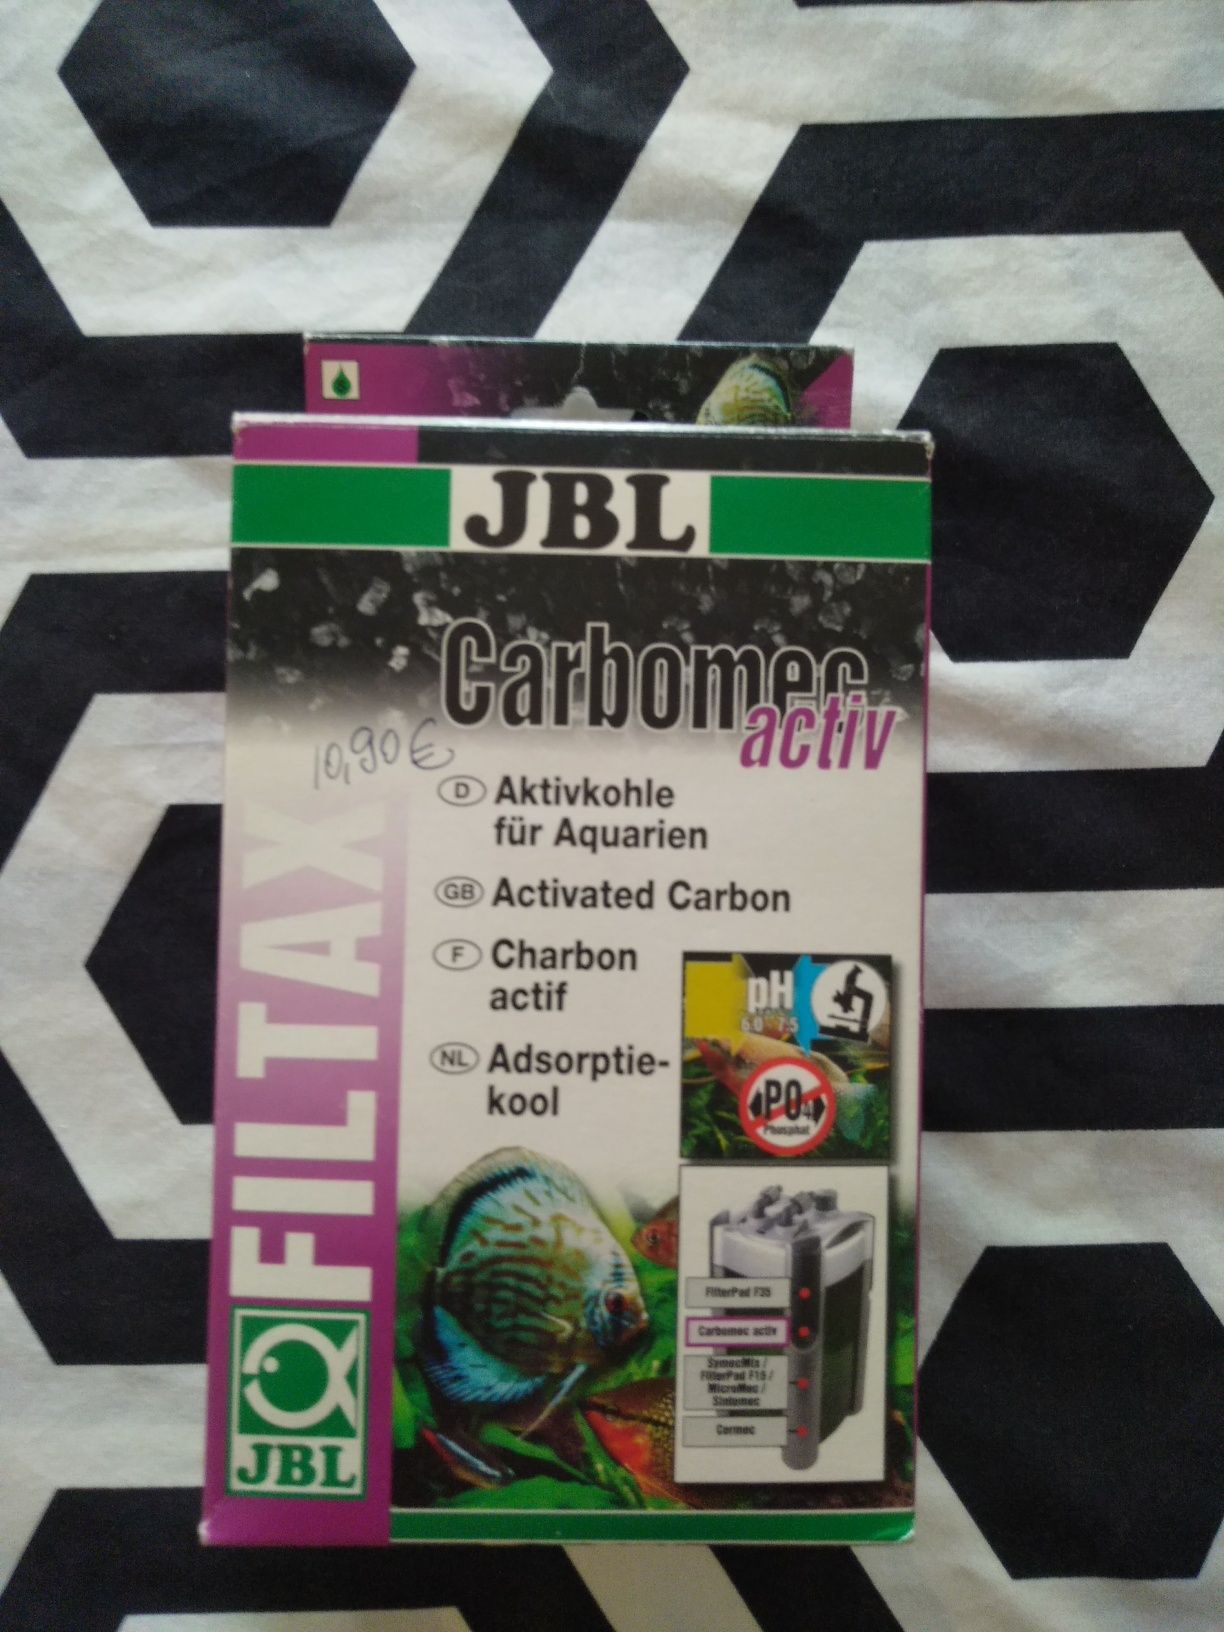 Carvão Ativo melhor marca JBL carbomec activ 1l